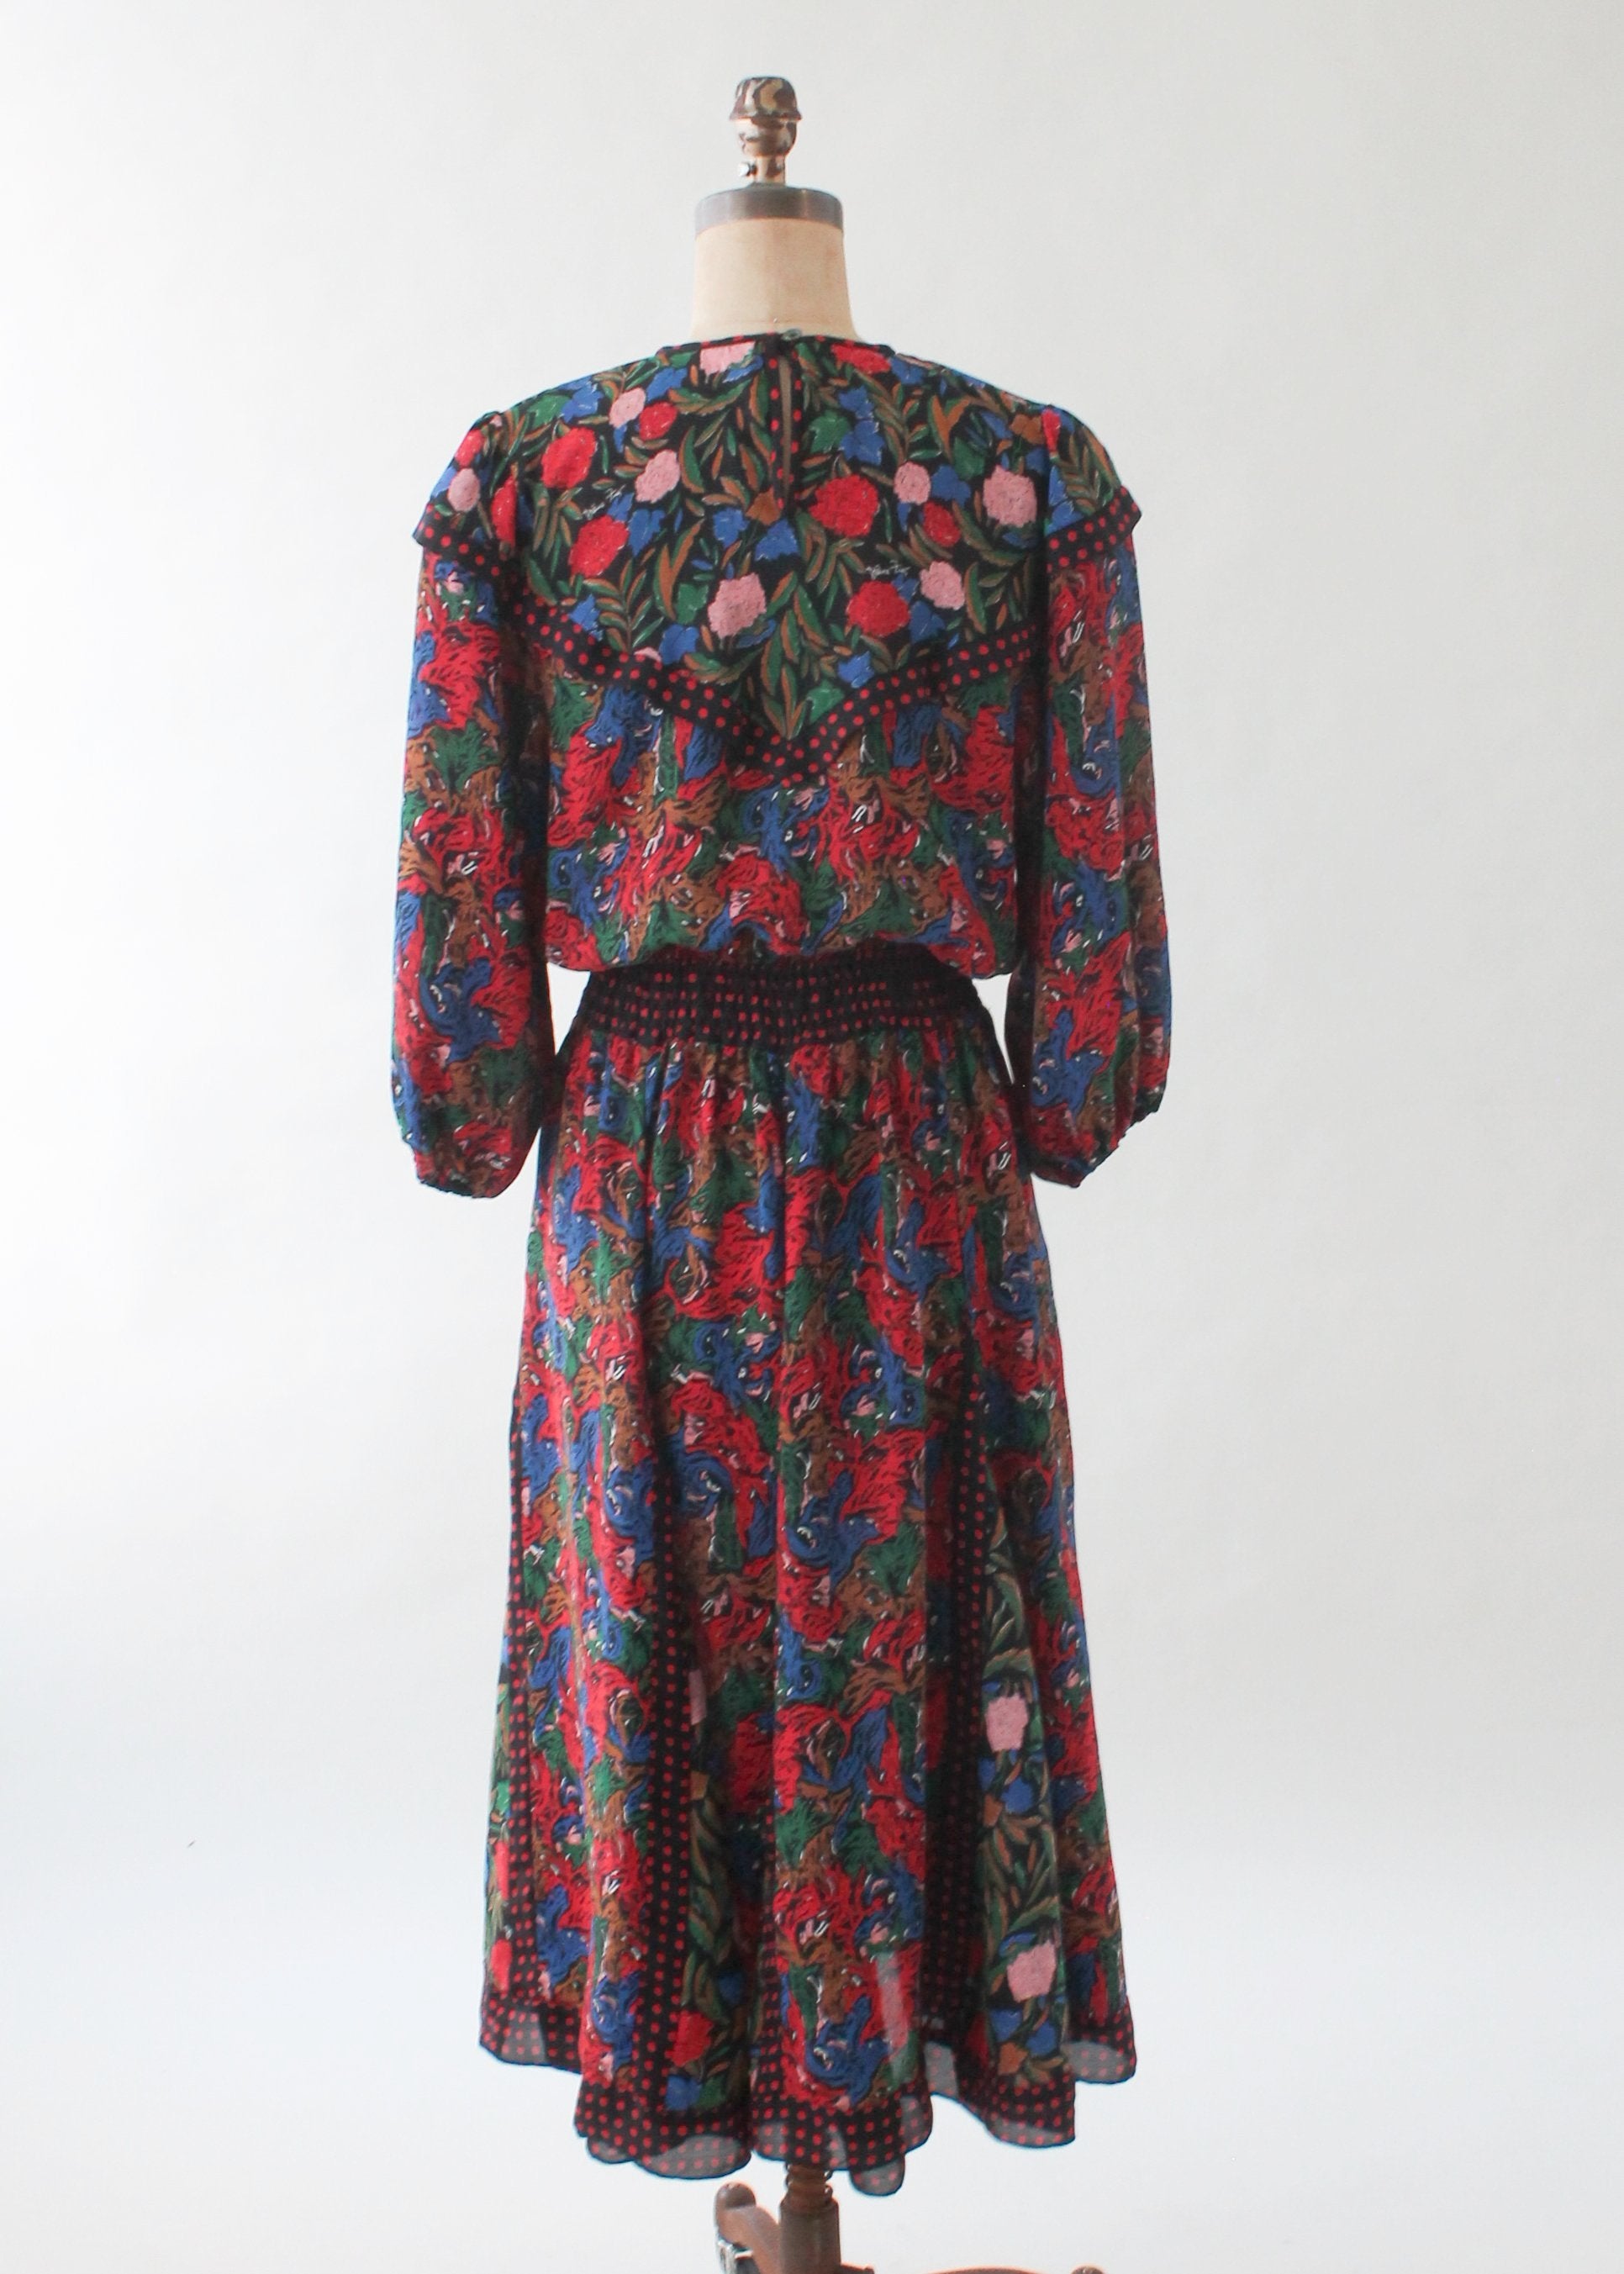 Vintage Diane Freis Floral Dress - Raleigh Vintage